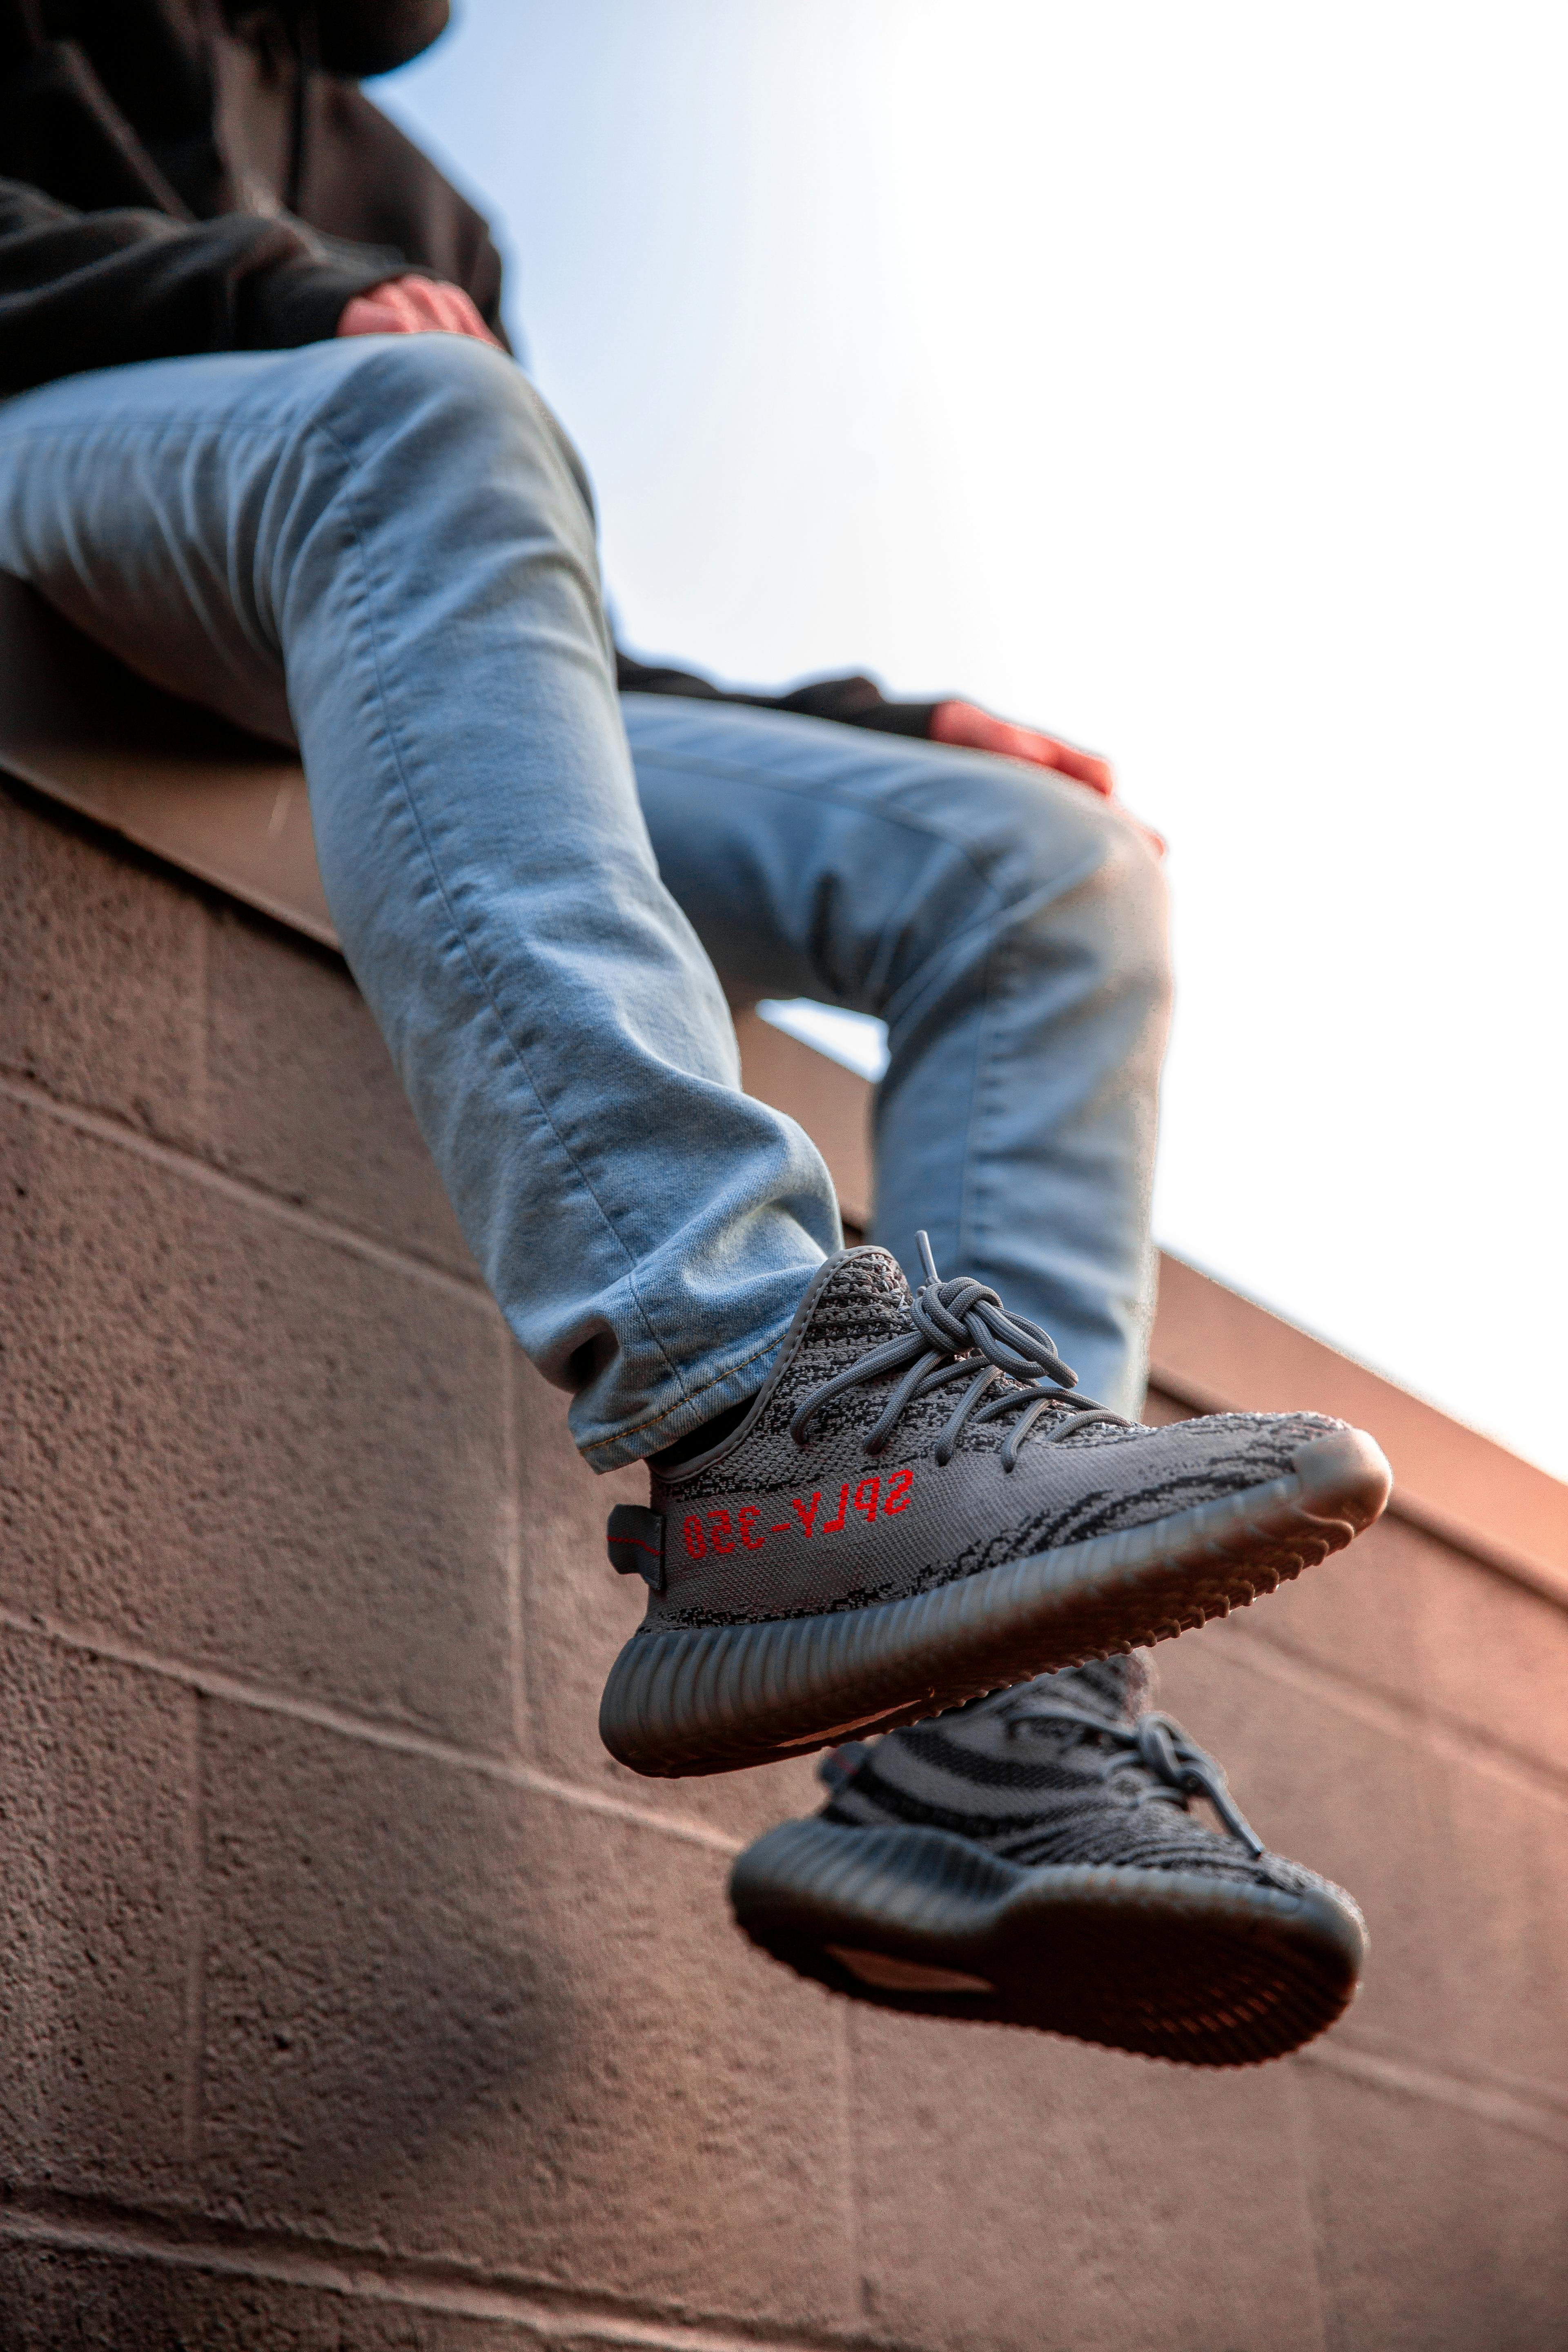 Persona Vistiendo Zapatos Adidas Yeezy · Foto